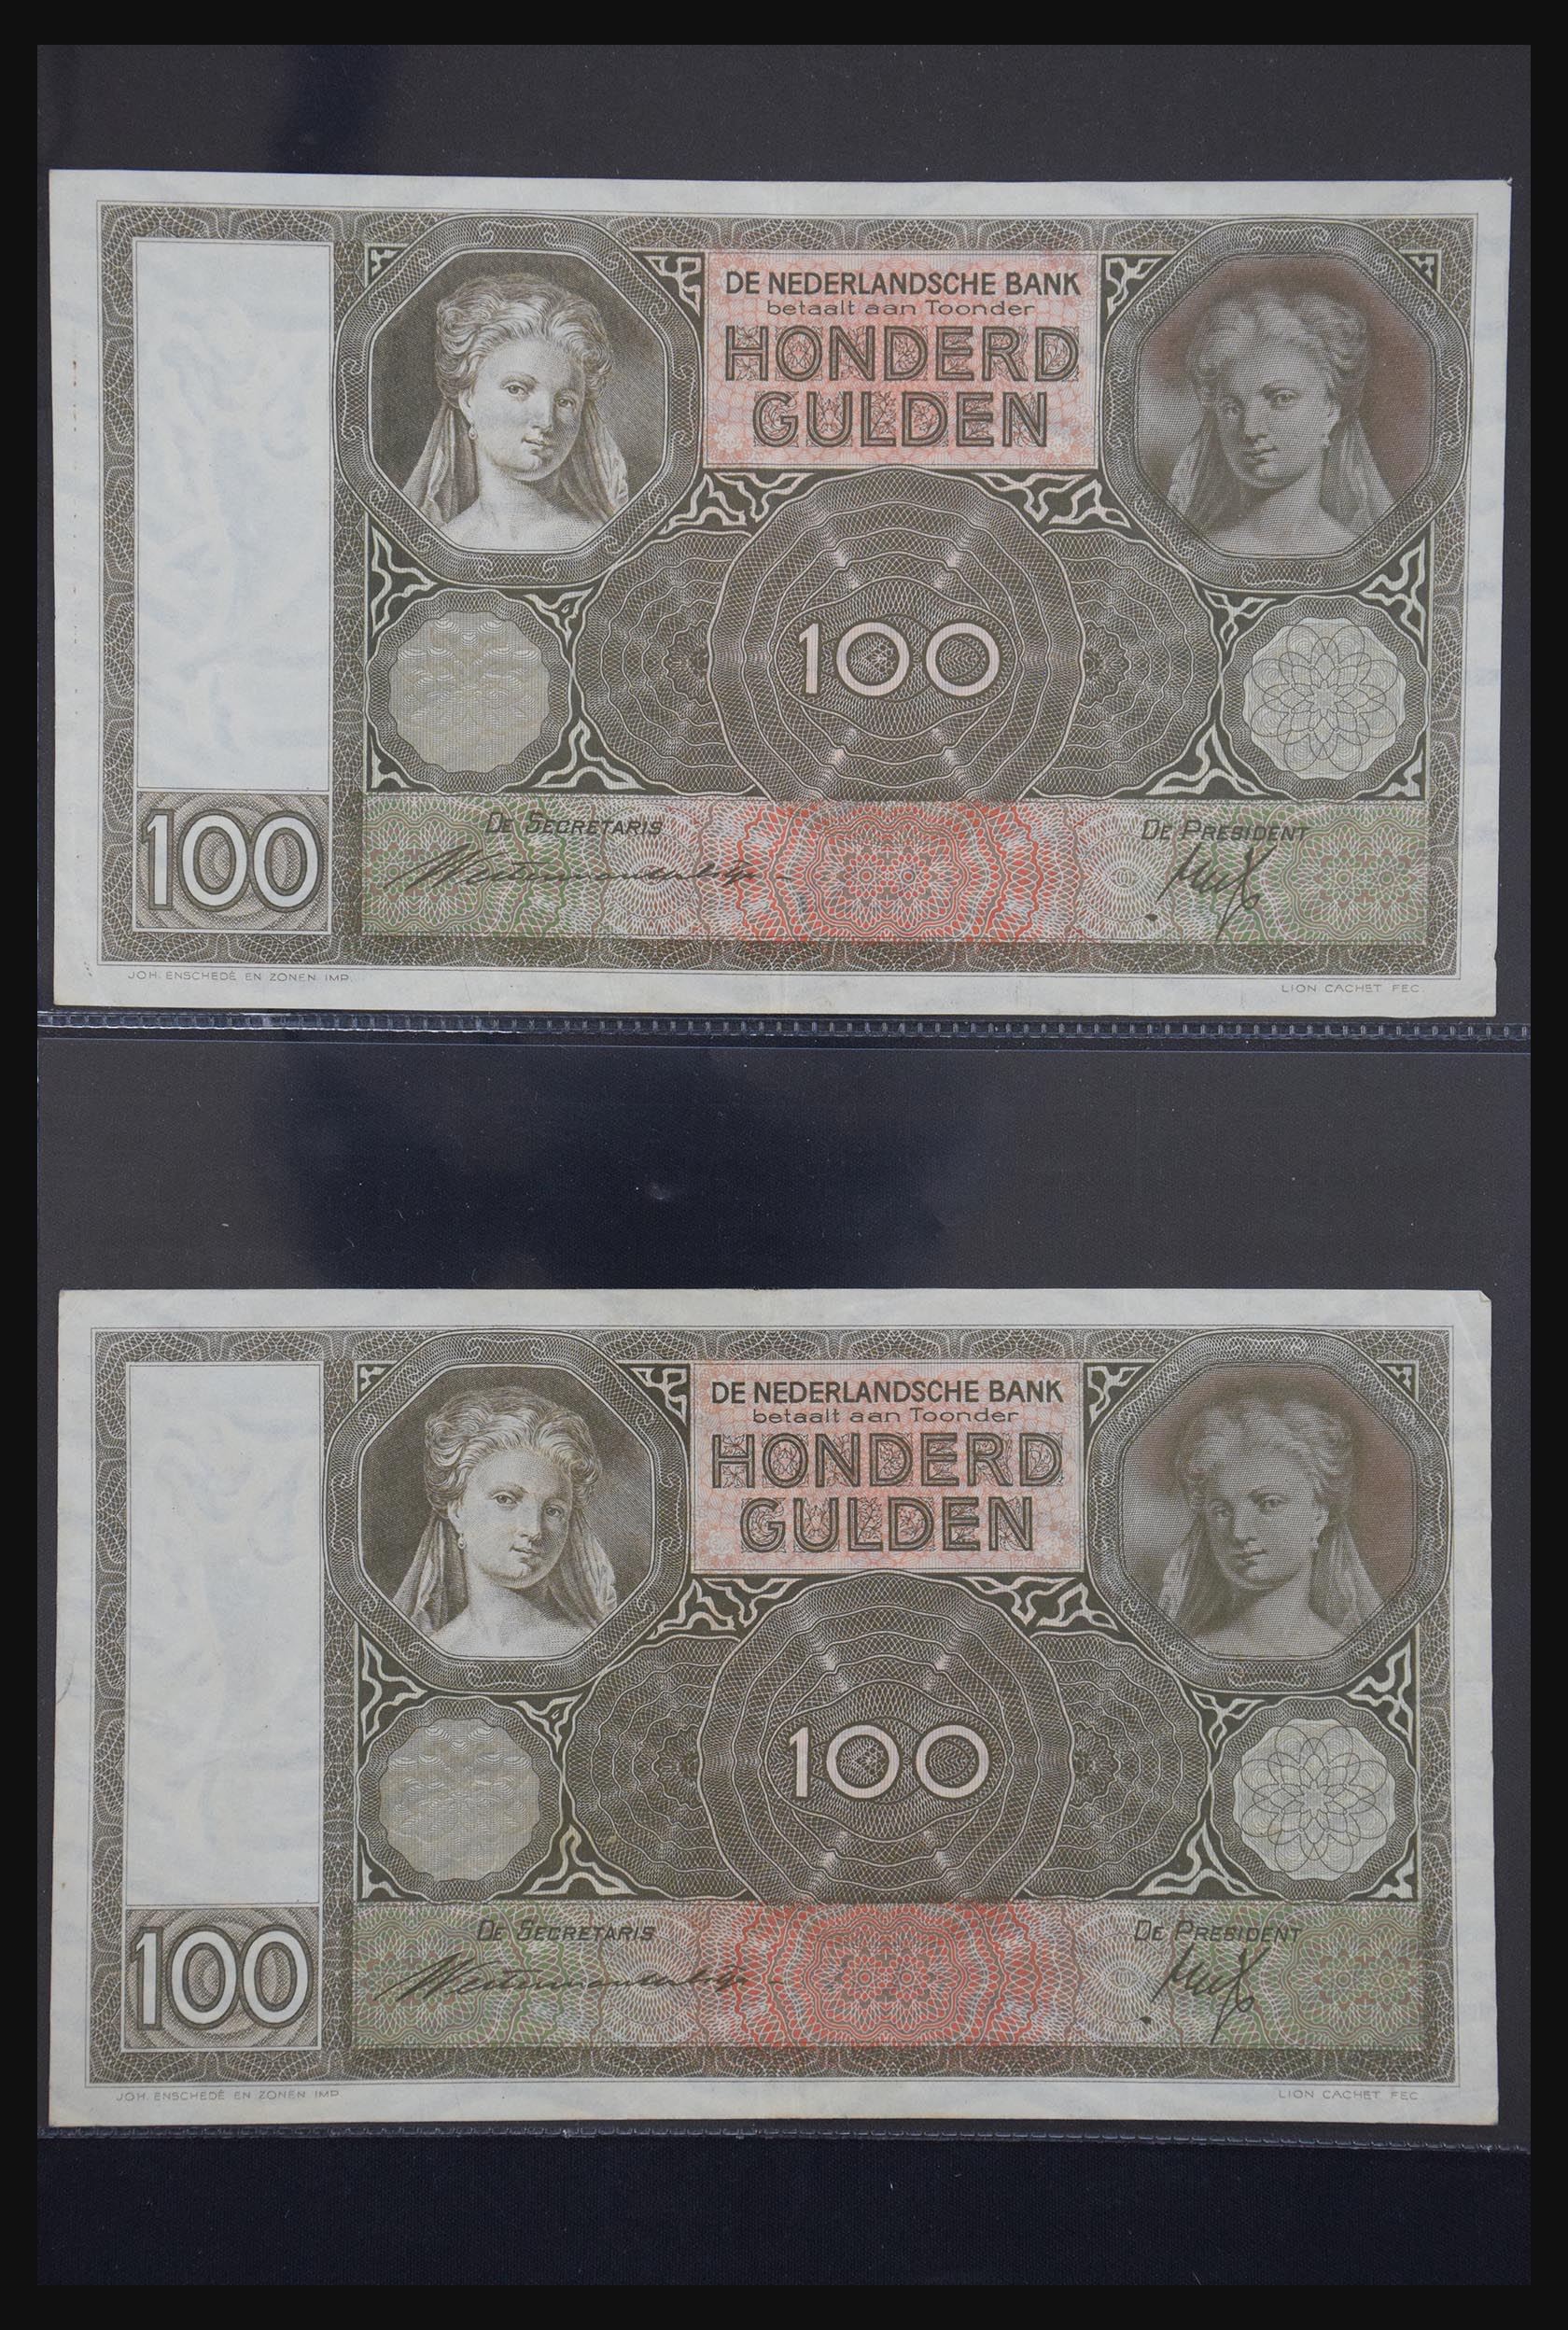 29404 043 - 29404 Netherlands banknotes 1924-1997.